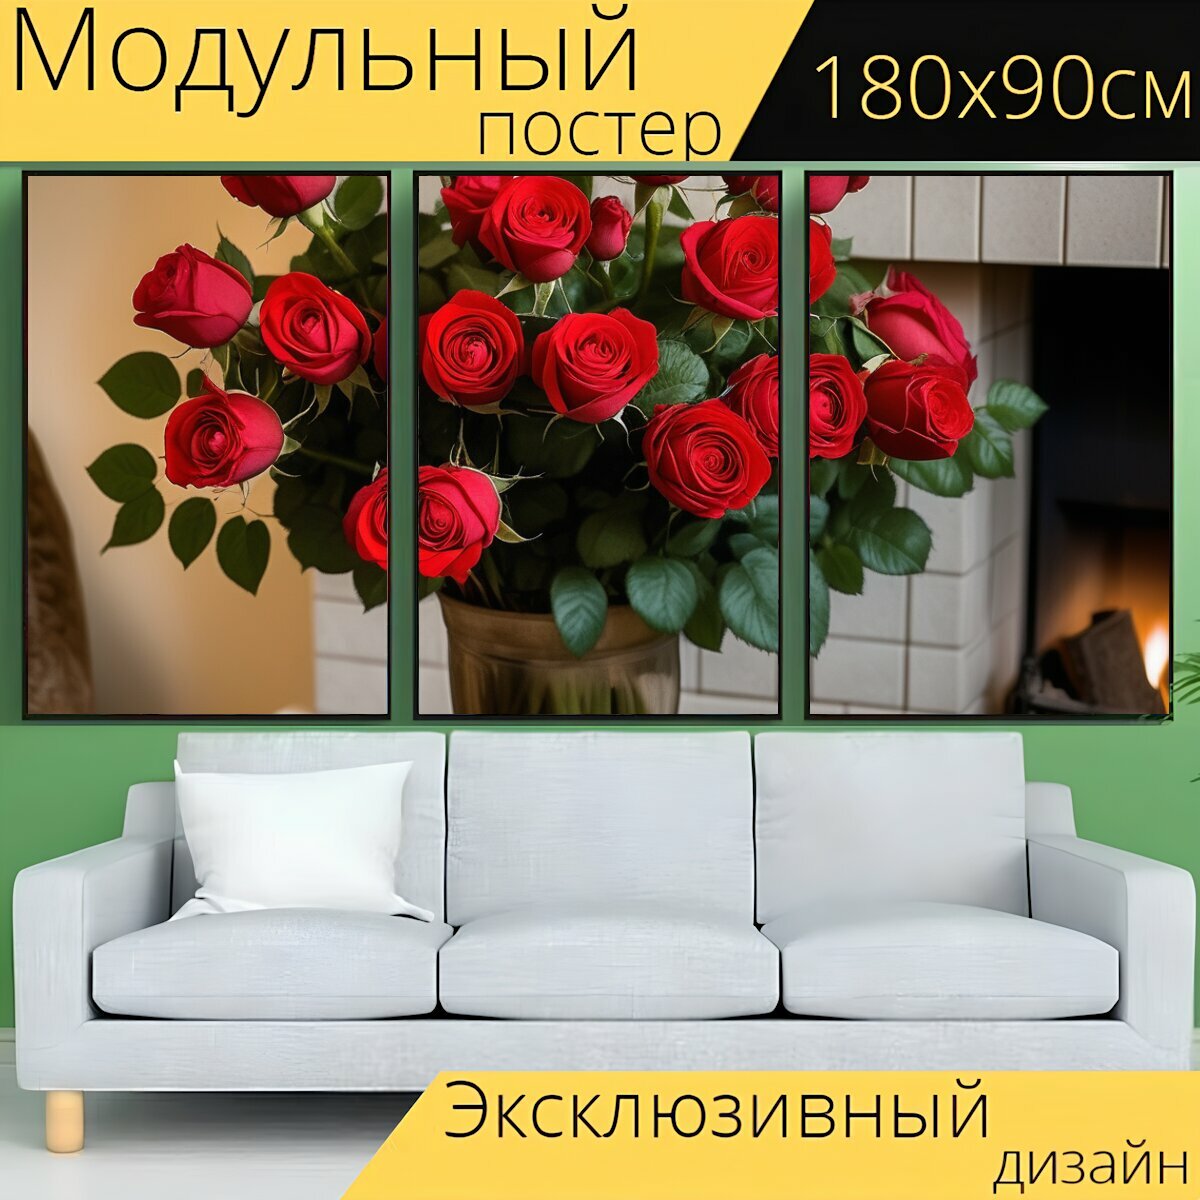 Модульный постер любителям природы "Цветы, роза, букет красных роз" 180 x 90 см. для интерьера на стену